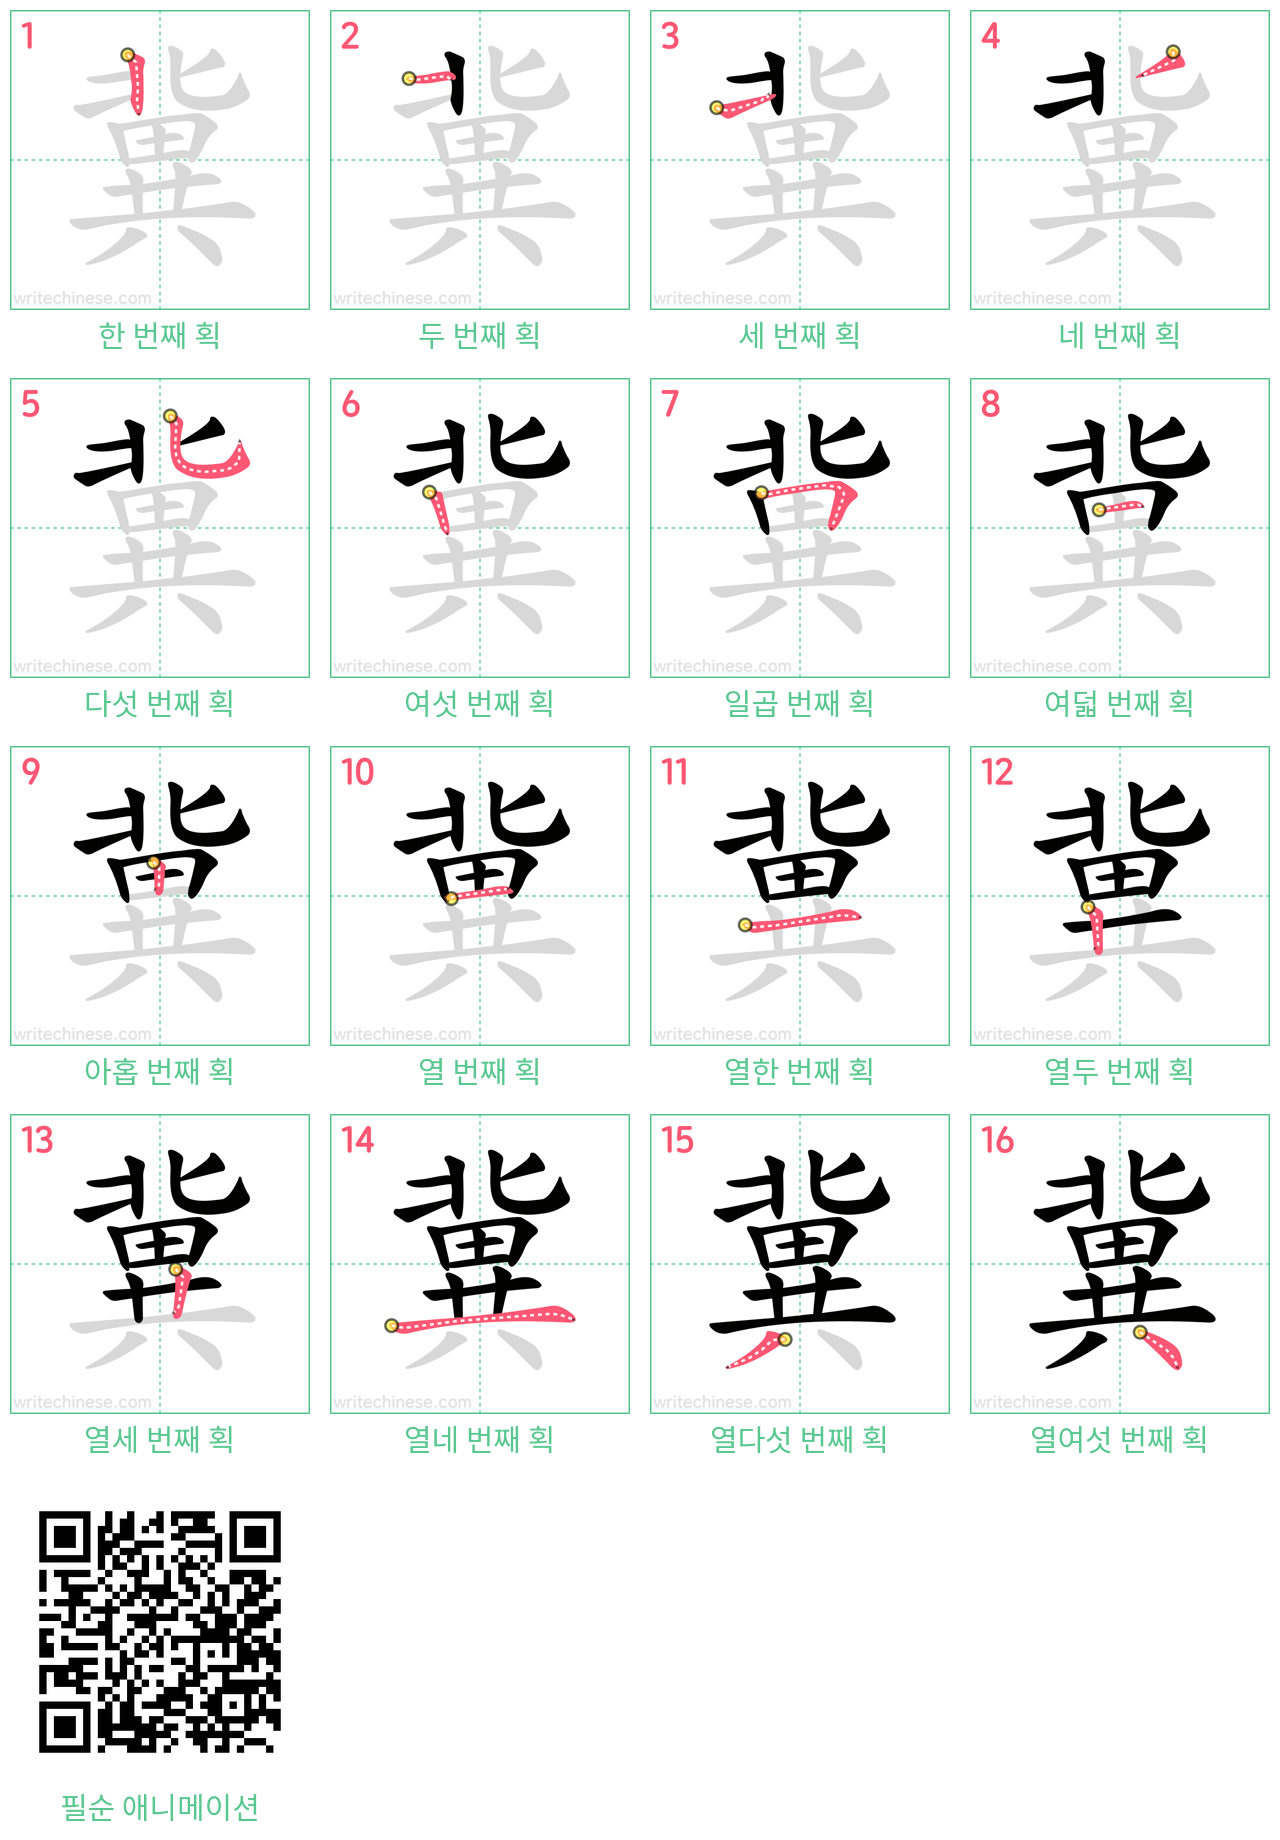 冀 step-by-step stroke order diagrams